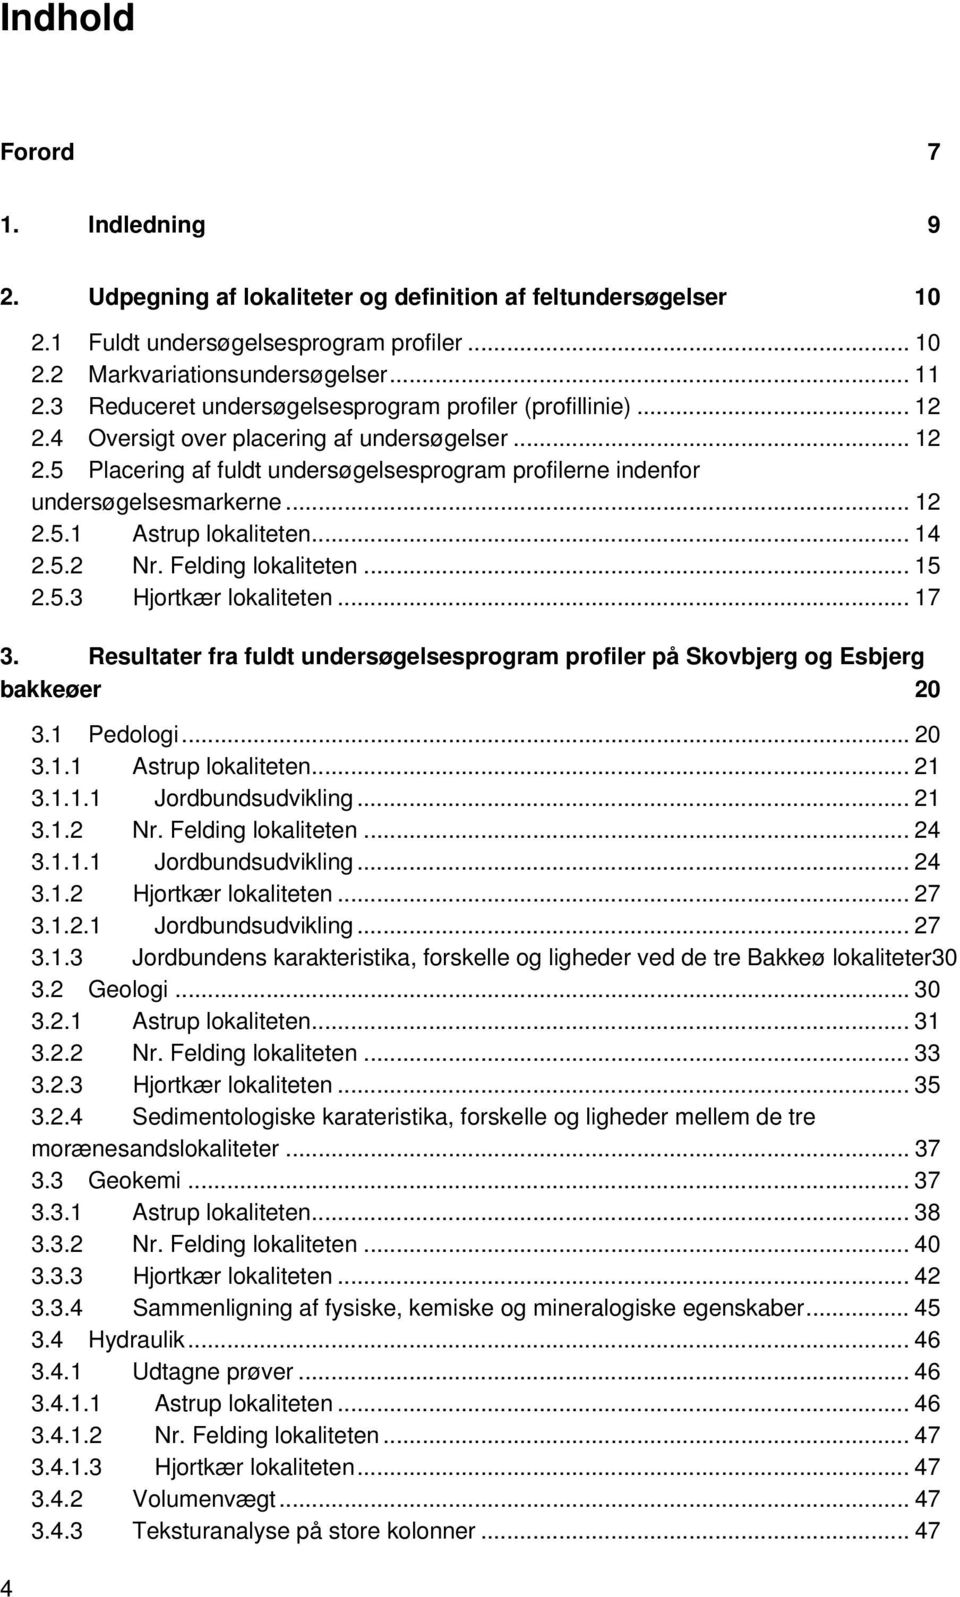 .. 12 2.5.1 Astrup lokaliteten... 14 2.5.2 Nr. Felding lokaliteten... 15 2.5.3 Hjortkær lokaliteten... 17 3. Resultater fra fuldt undersøgelsesprogram profiler på Skovbjerg og Esbjerg bakkeøer 20 3.